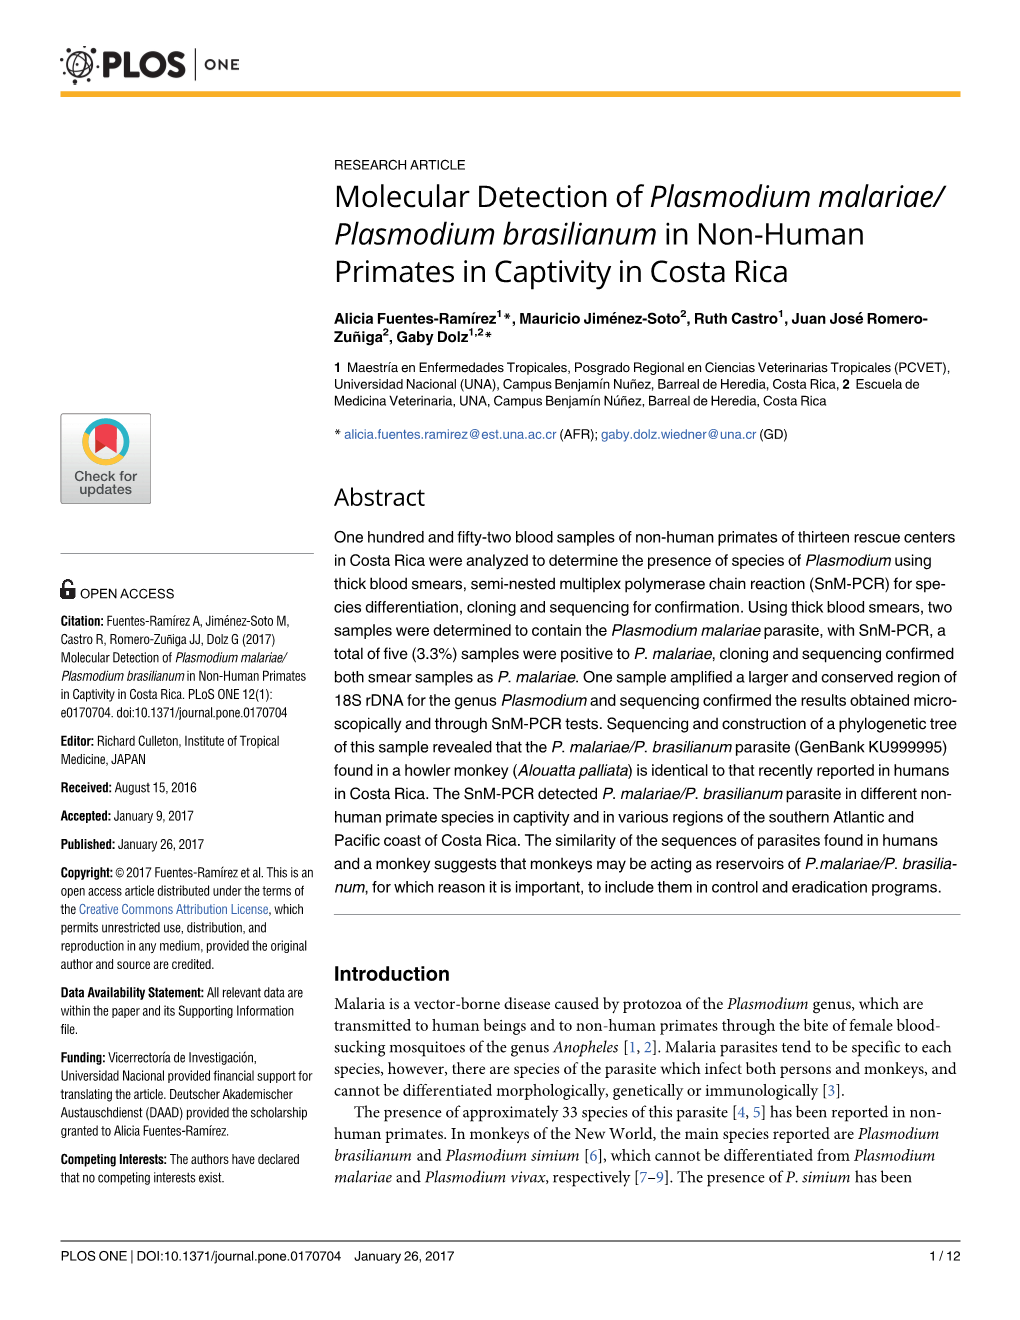 Molecular Detection of Plasmodium Malariae/Plasmodium Brasilianum